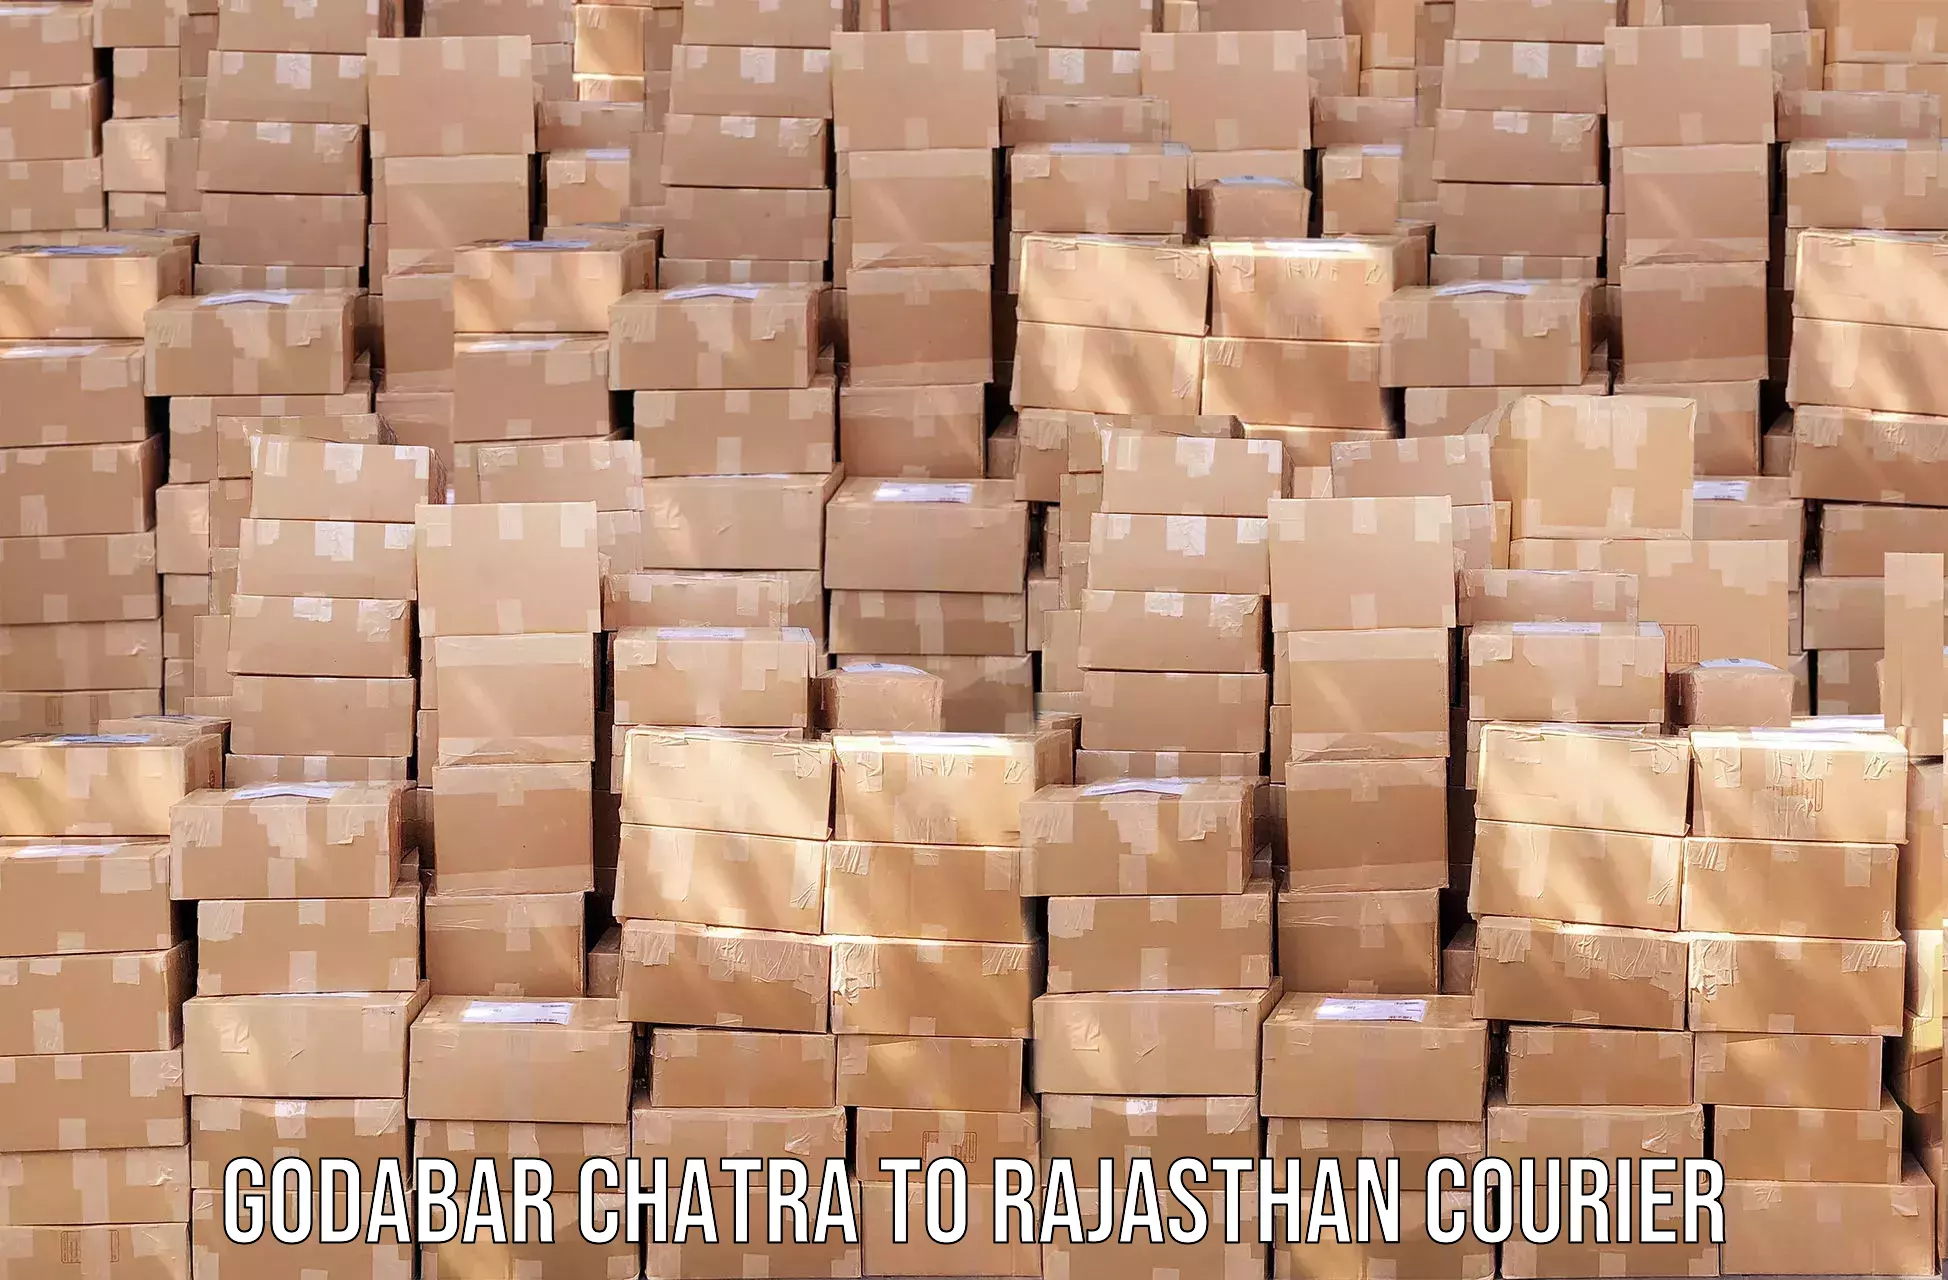 Urgent courier needs Godabar Chatra to Ajmer